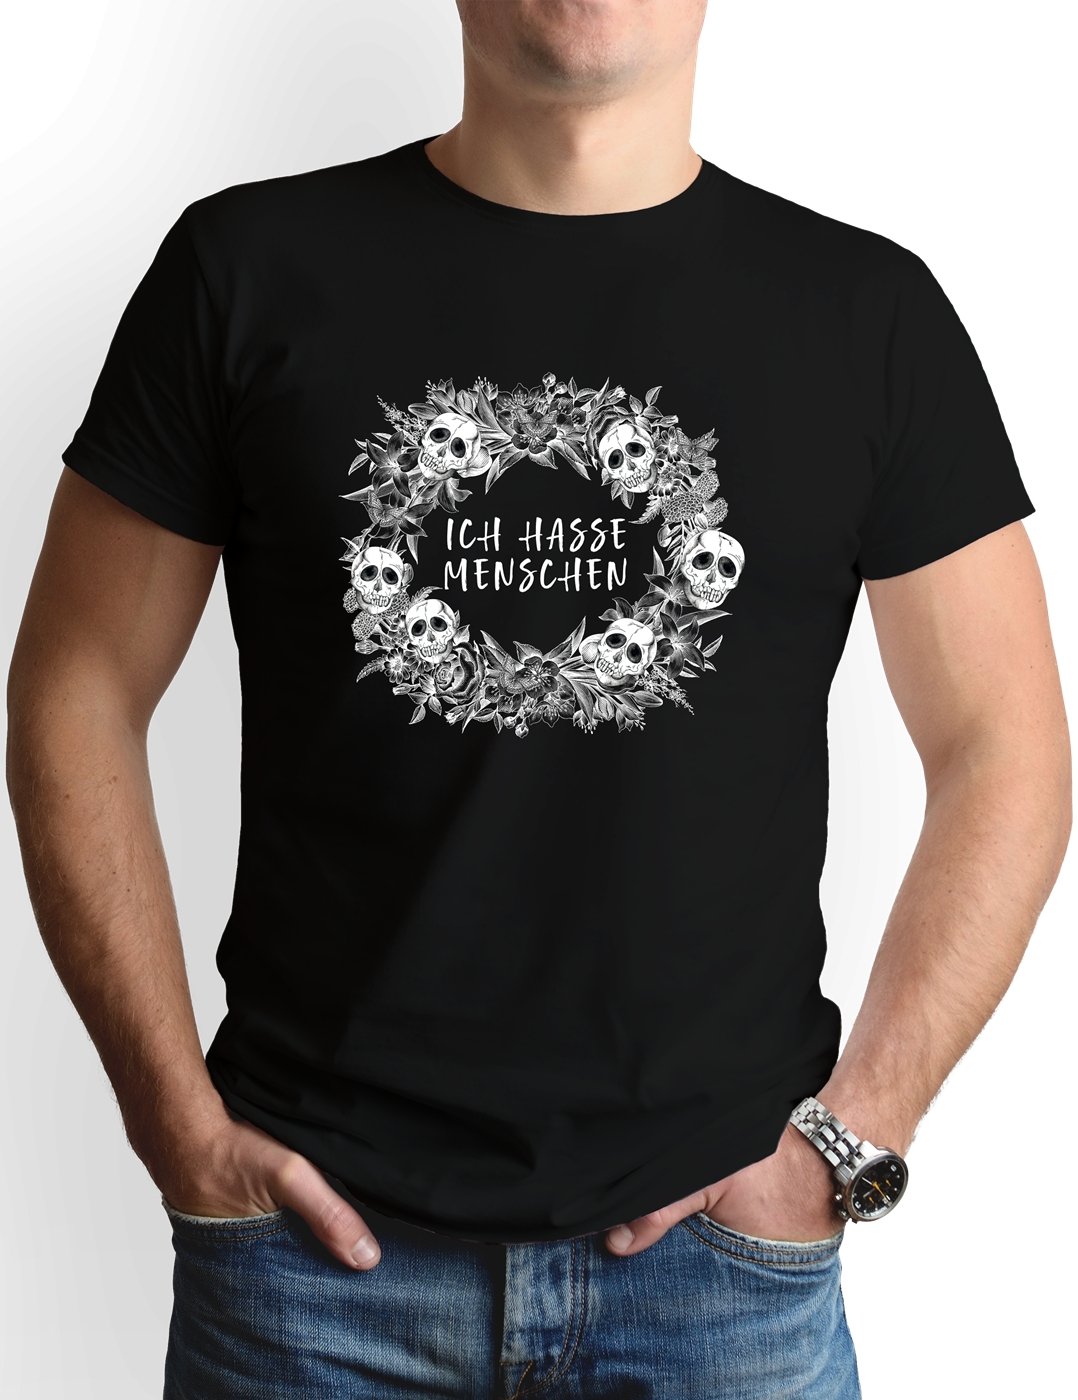 Bild: T-Shirt Herren - Ich hasse Menschen - Skull Statement Geschenkidee